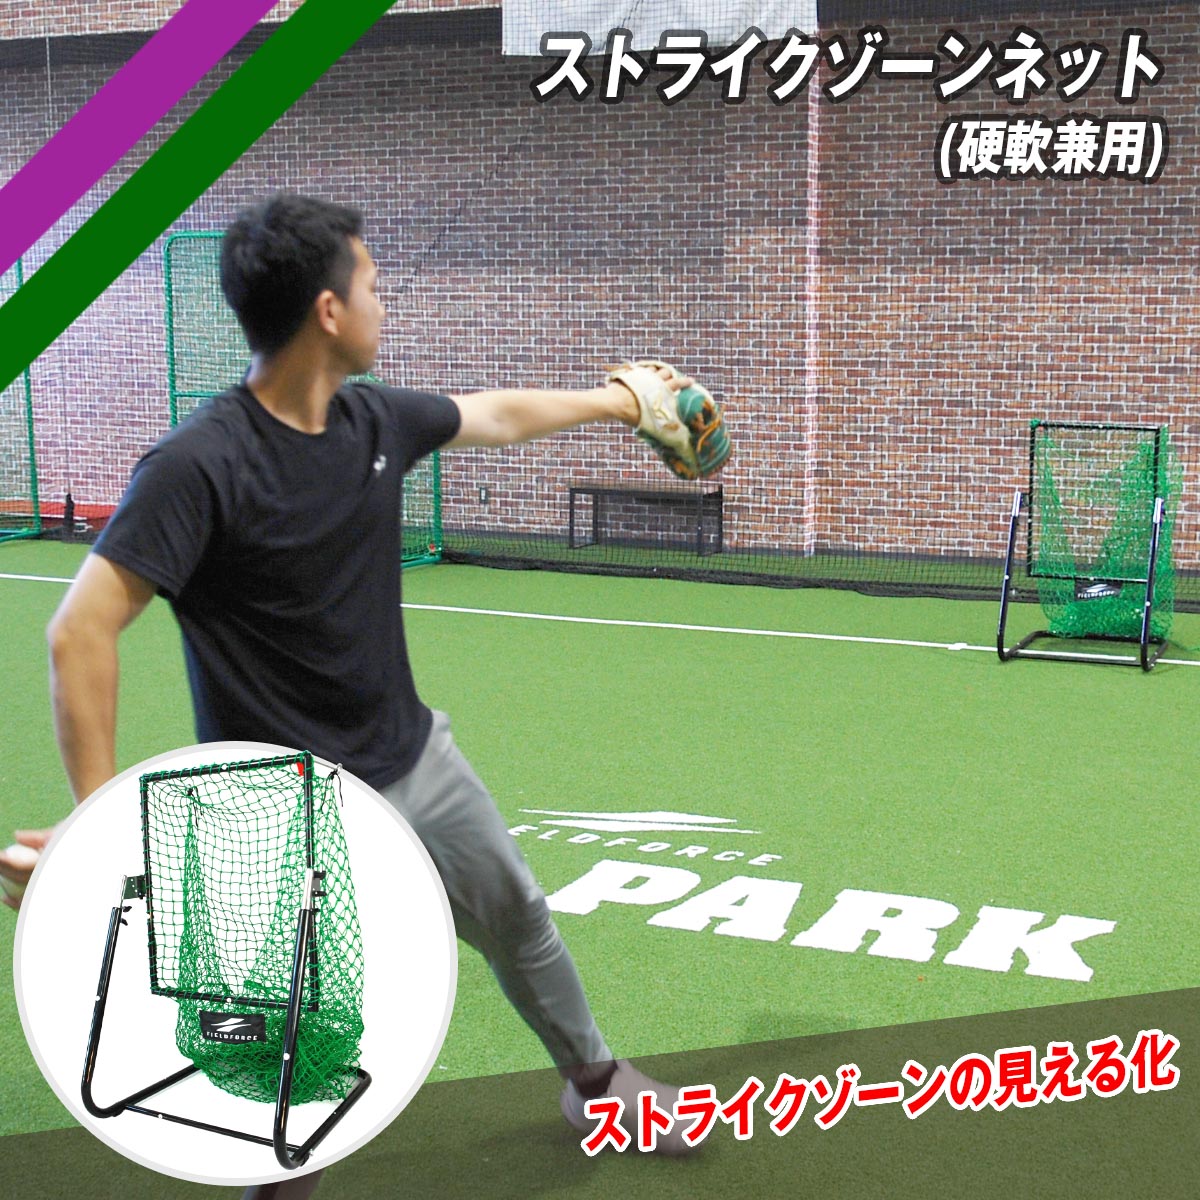 【 フィールドフォース 公式 】ストライクゾーンネット (硬軟兼用) FSZN-180 野球 トレーニング ギア ベースボール 簡単設置 軟式 硬式 ソフトボール ピッチング コントロール